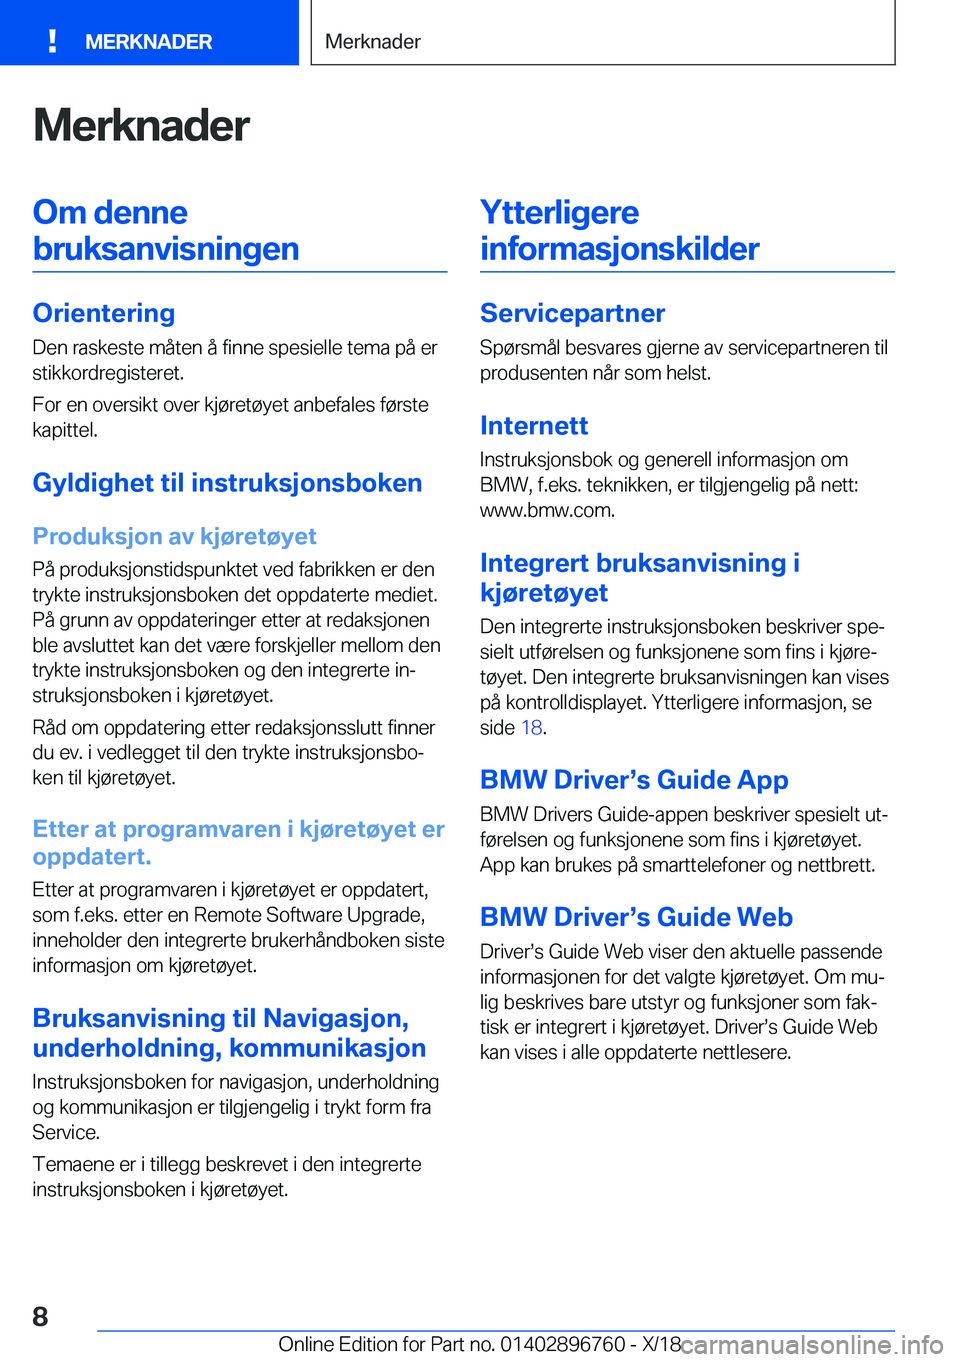 BMW X5 2019  InstruksjonsbØker (in Norwegian) �M�e�r�k�n�a�d�e�r�O�m��d�e�n�n�e�b�r�u�k�s�a�n�v�i�s�n�i�n�g�e�n
�O�r�i�e�n�t�e�r�i�n�g
�D�e�n��r�a�s�k�e�s�t�e��m�å�t�e�n��å��f�i�n�n�e��s�p�e�s�i�e�l�l�e��t�e�m�a��p�å��e�r �s�t�i�k�k�o